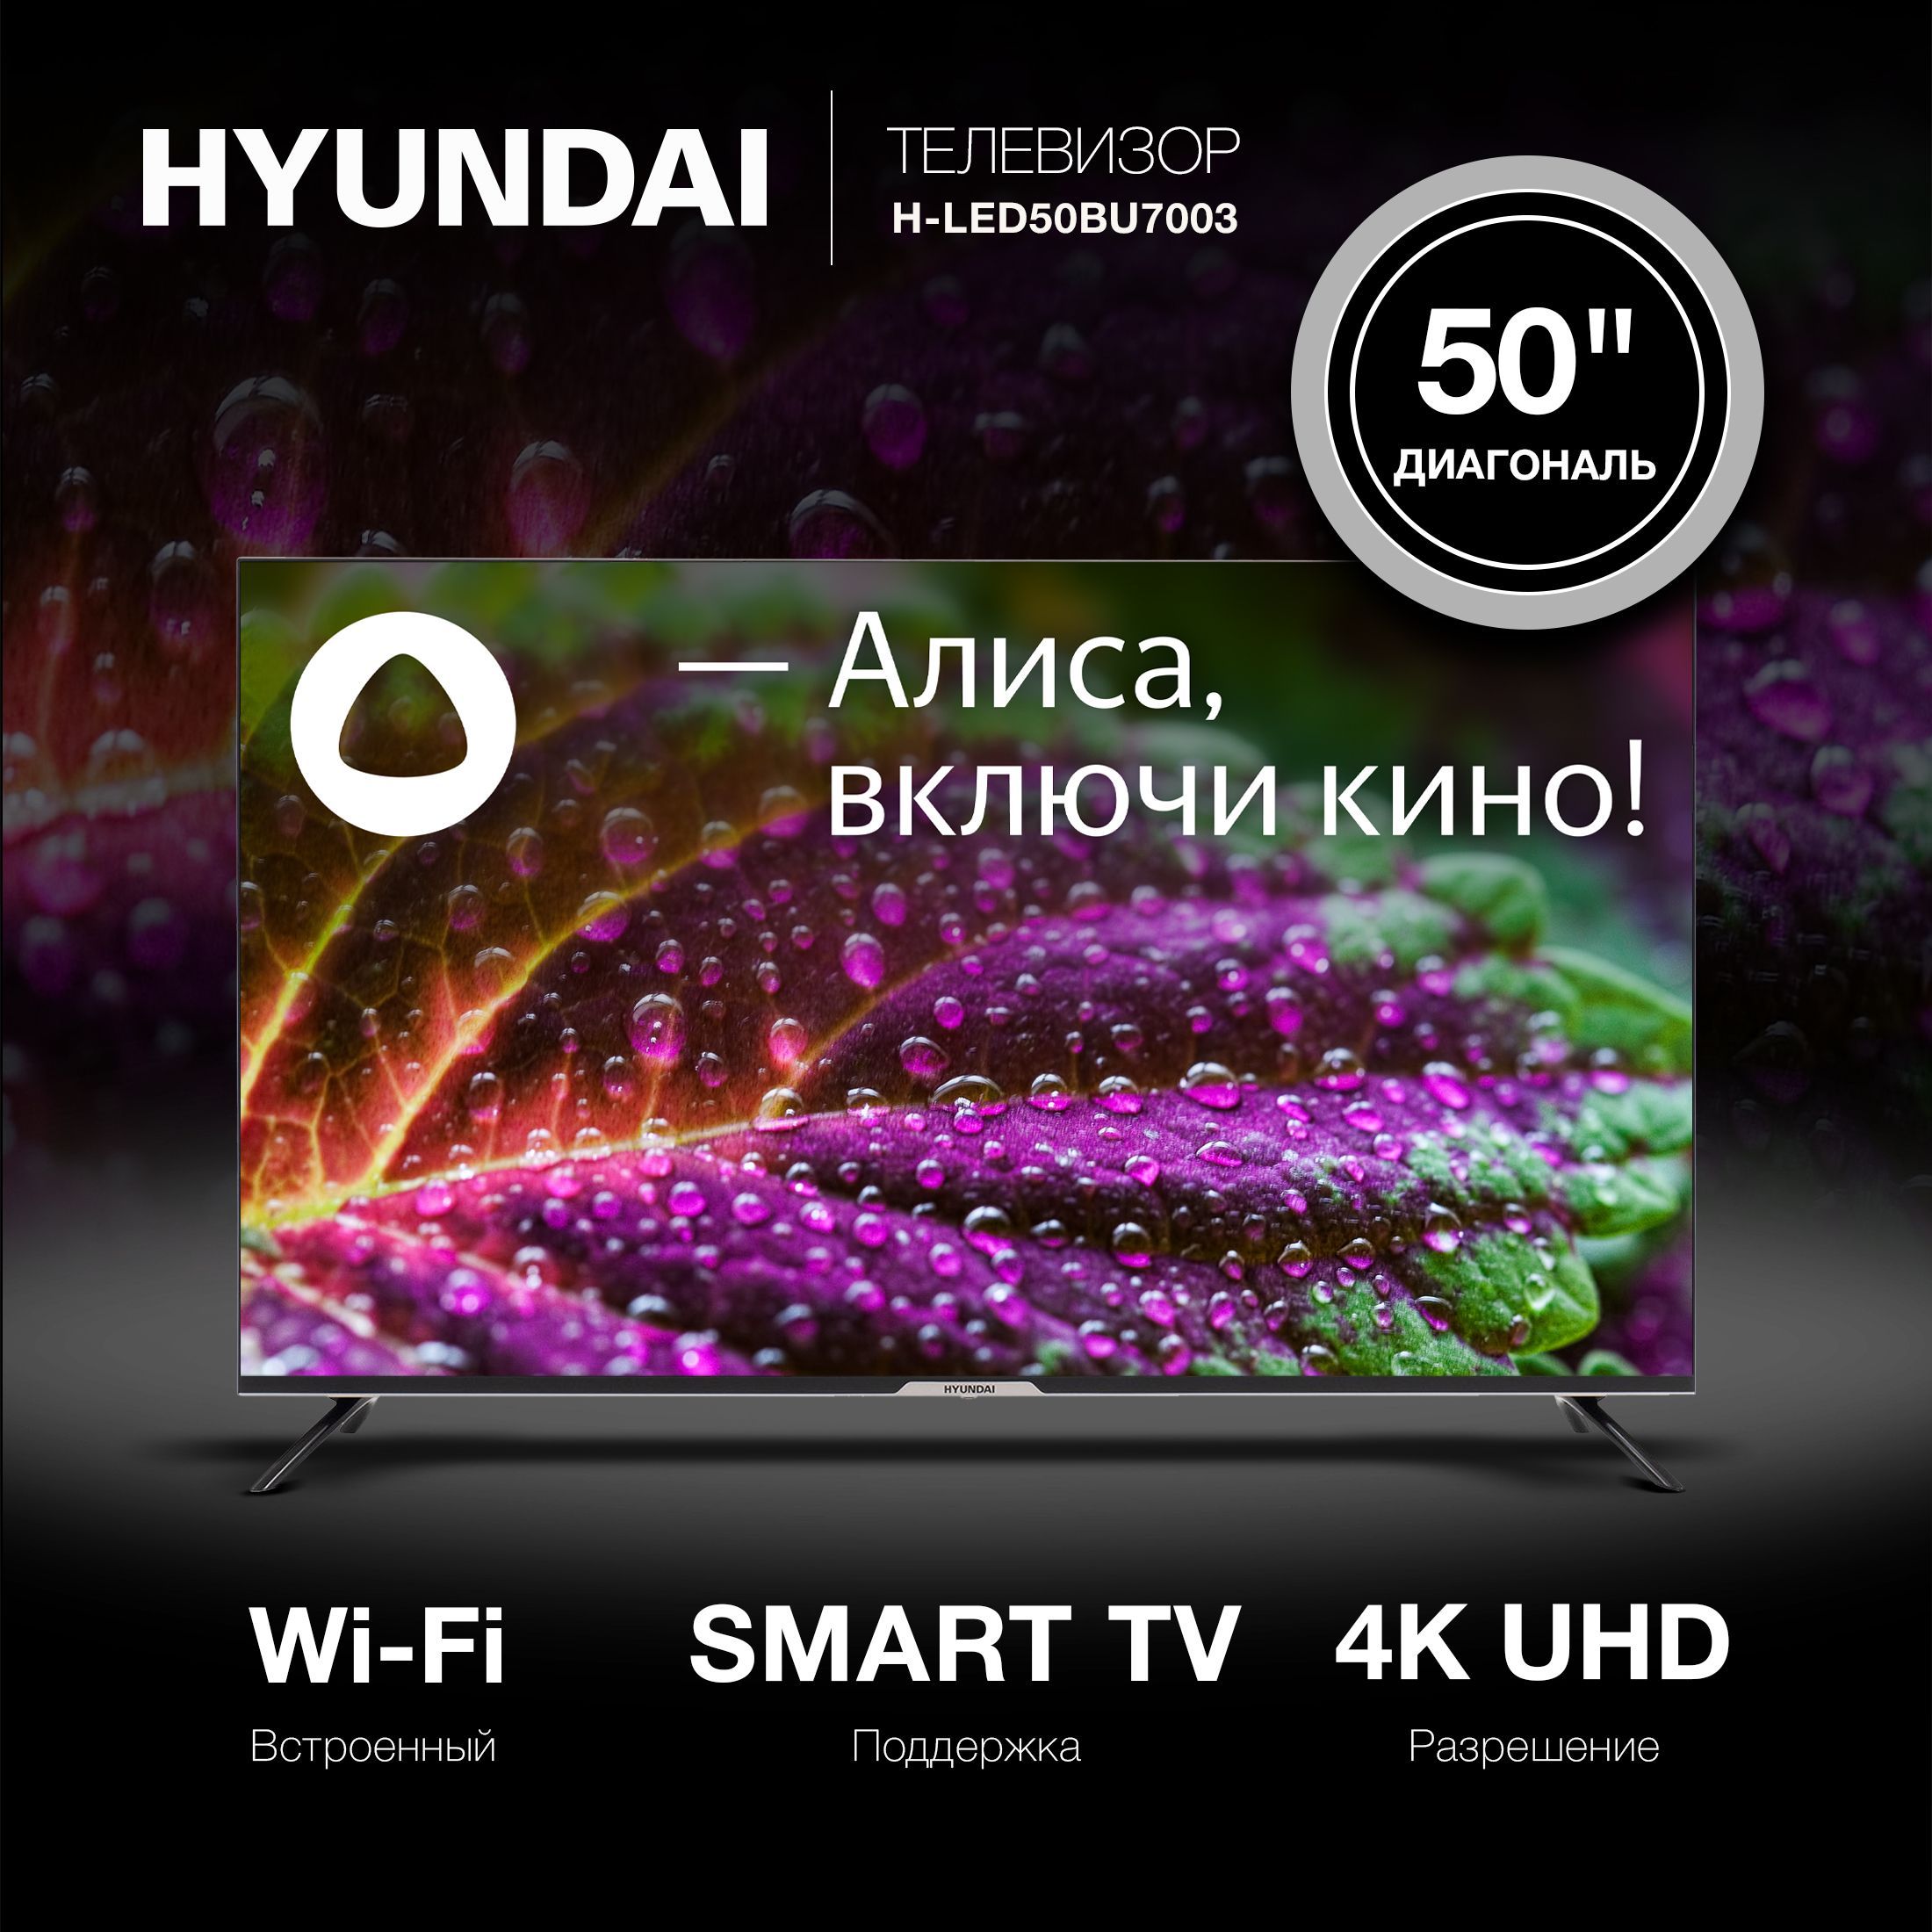 Телевизор hyundai led65bu7003. Hyundai h-led43bu7003. Hyundai h-led32bs5003. H-led55bu7003. Hyundai 55 h-led55bu7003.